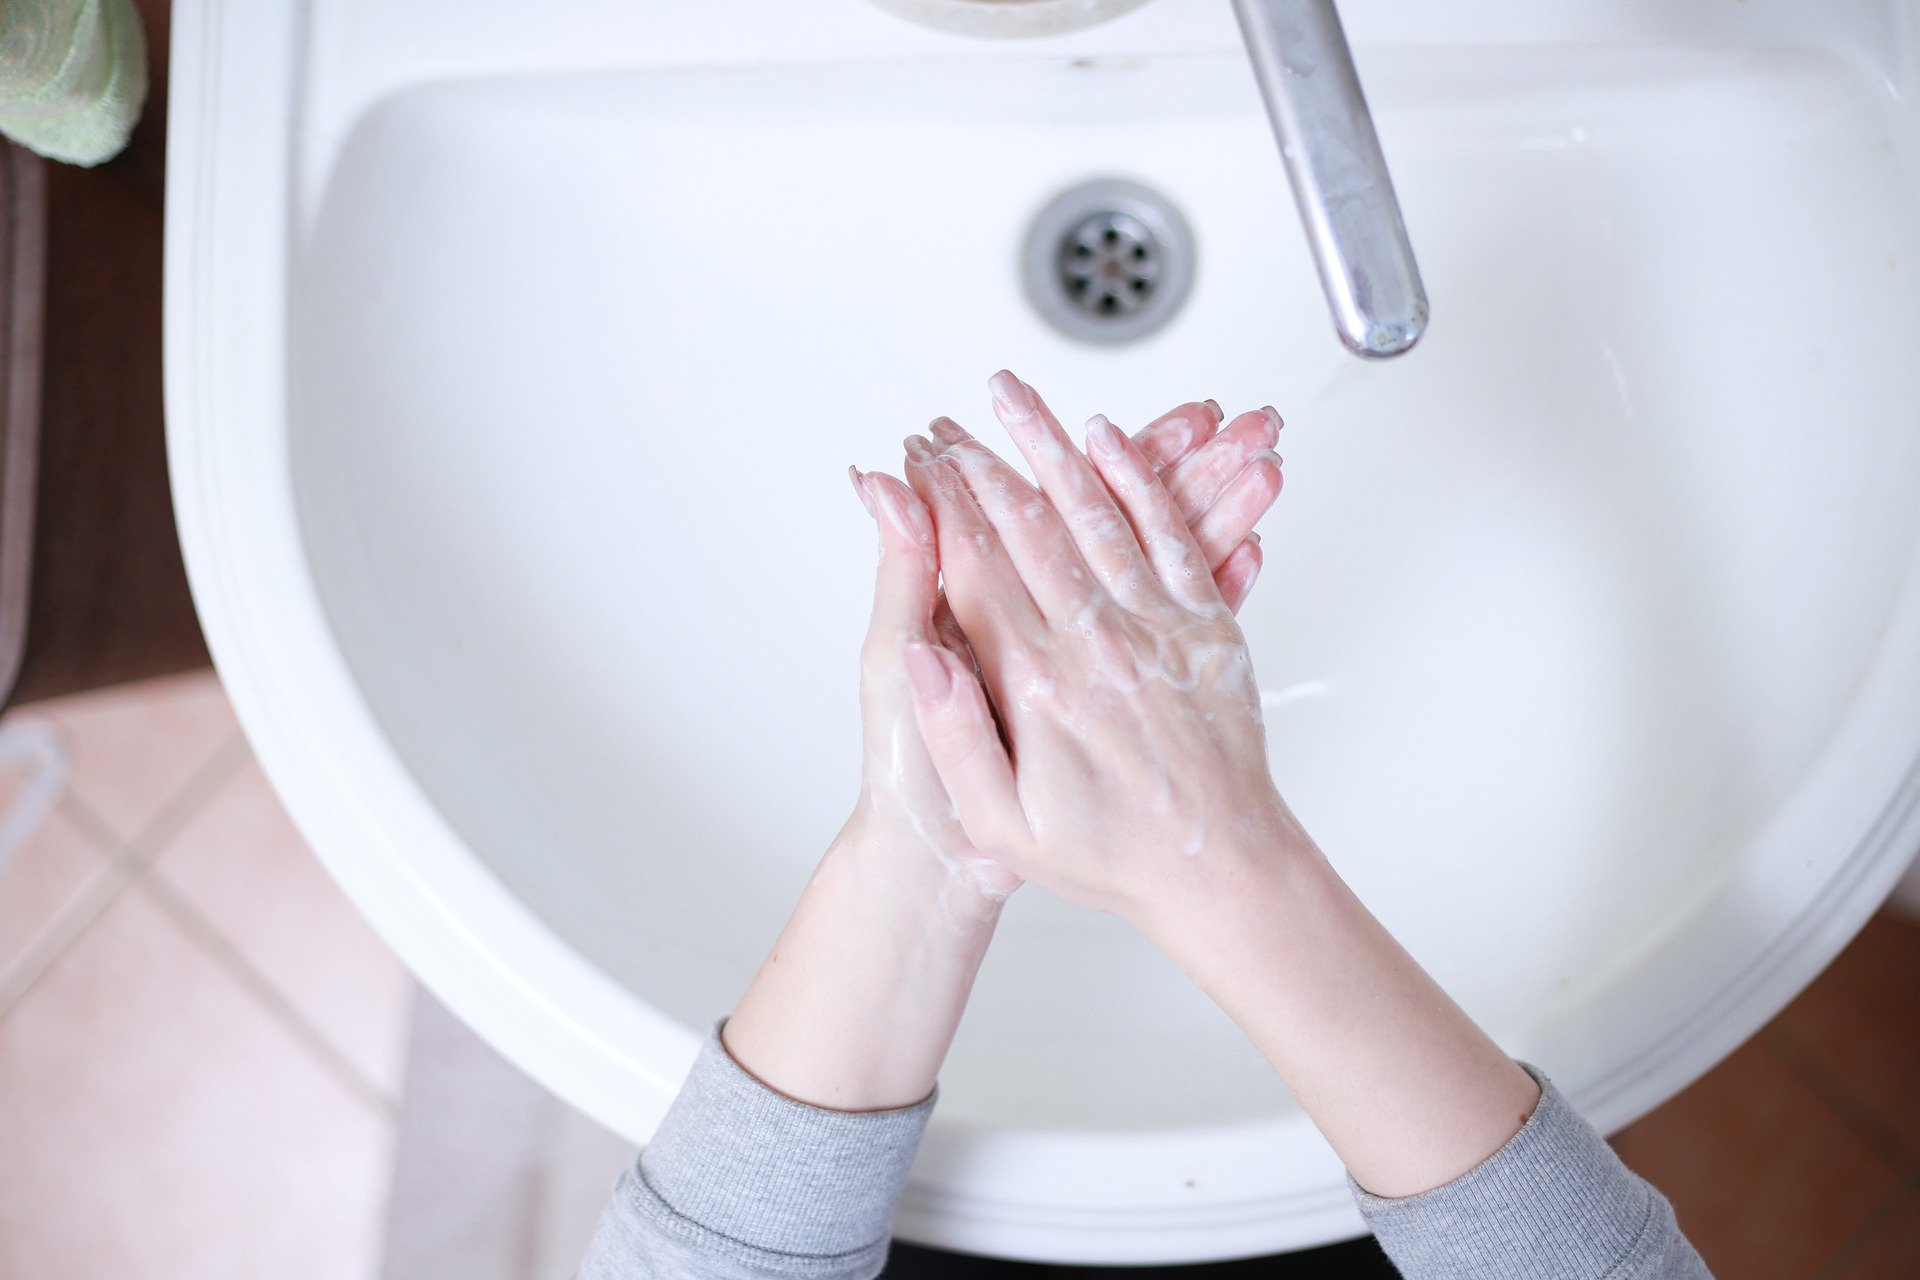 Foto de uma pessoa lavando as mãos em uma pia branca. Imagem ilustrativa para o texto pandemia.